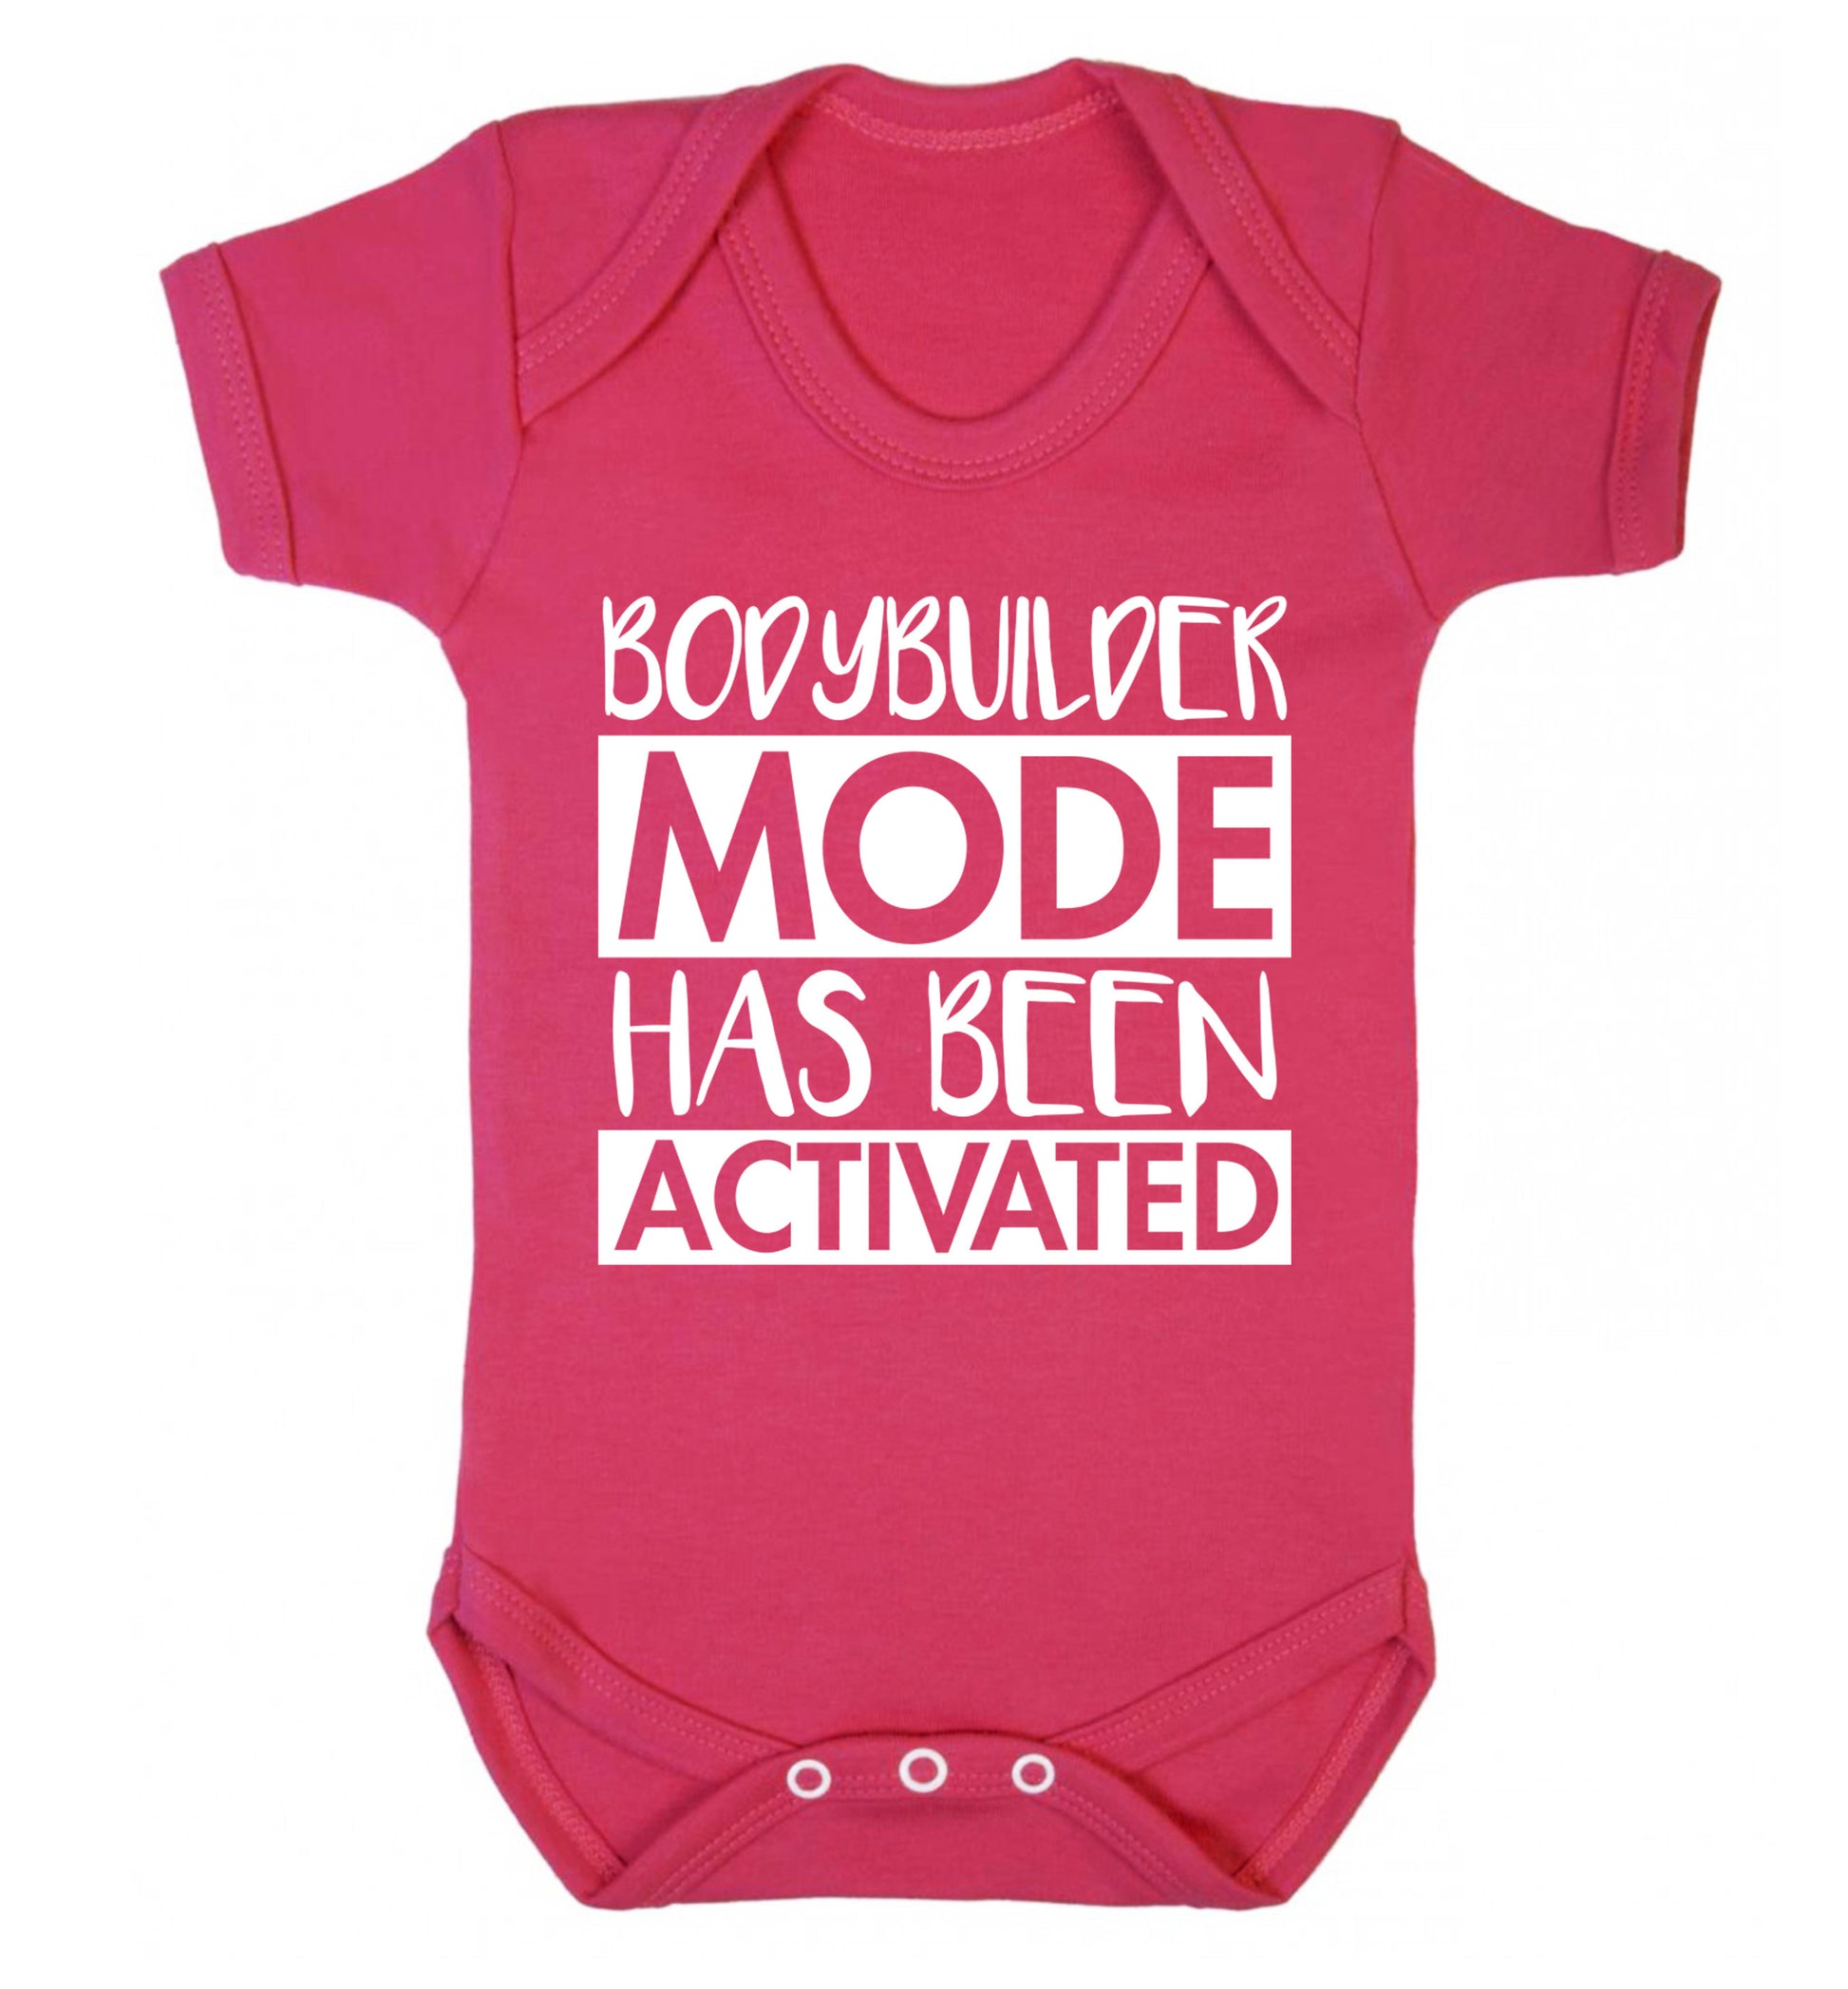 Bodybuilder mode activated Baby Vest dark pink 18-24 months